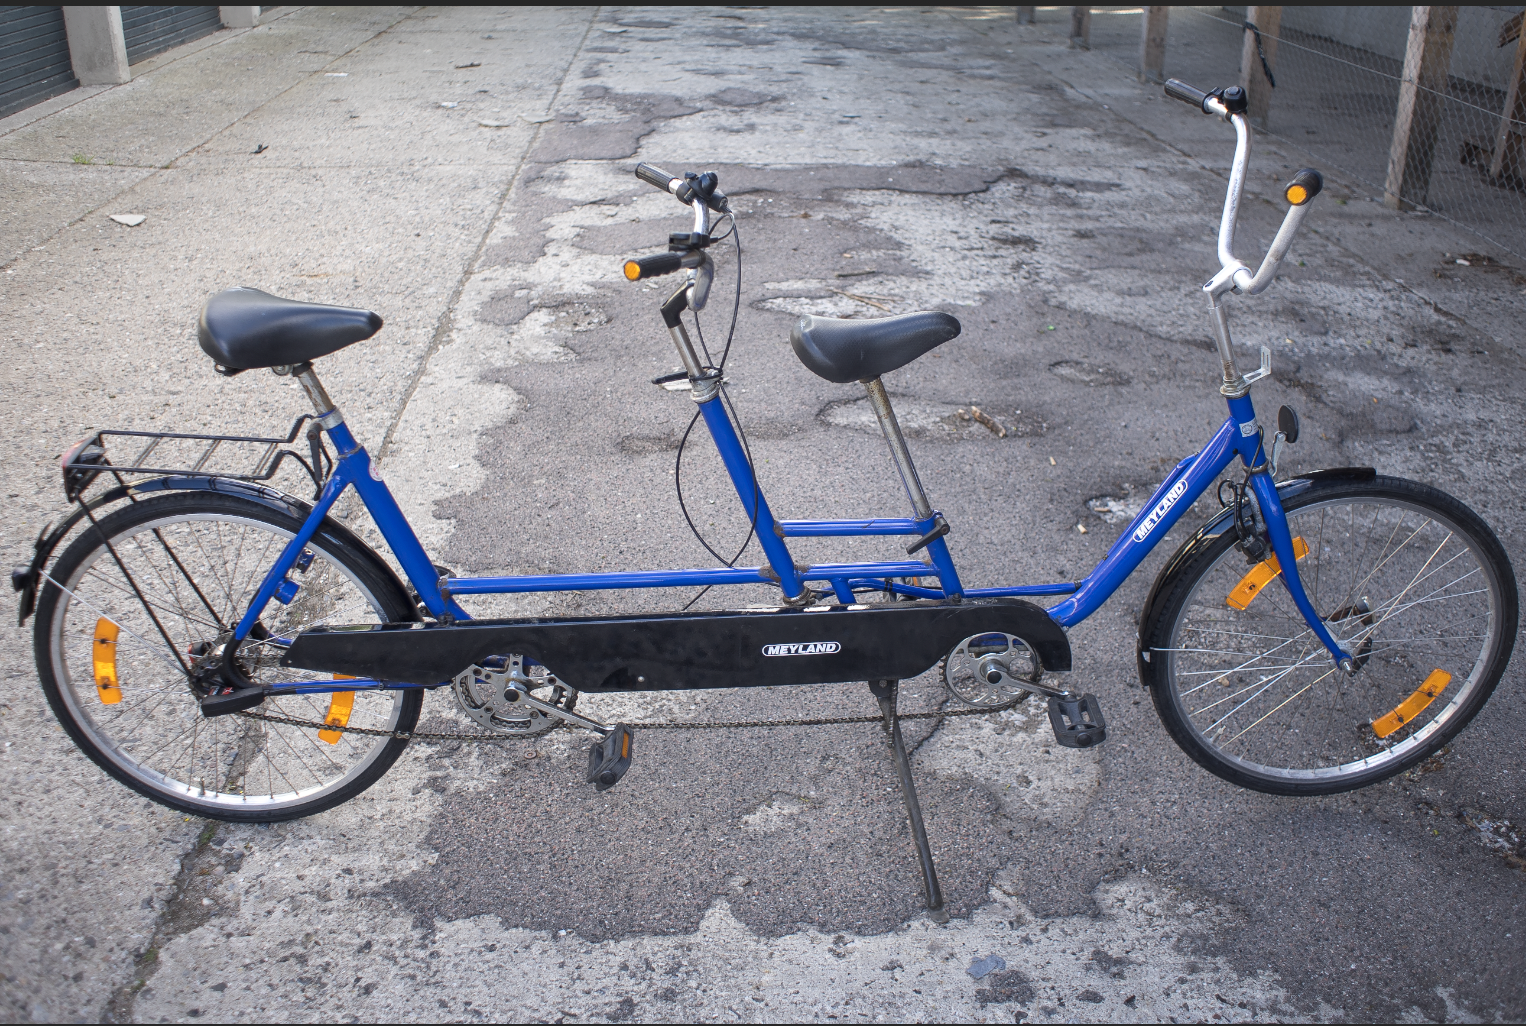 lyd kompensere Beskrivende ShareOne udlejningsportal - Tandem cykel til leje